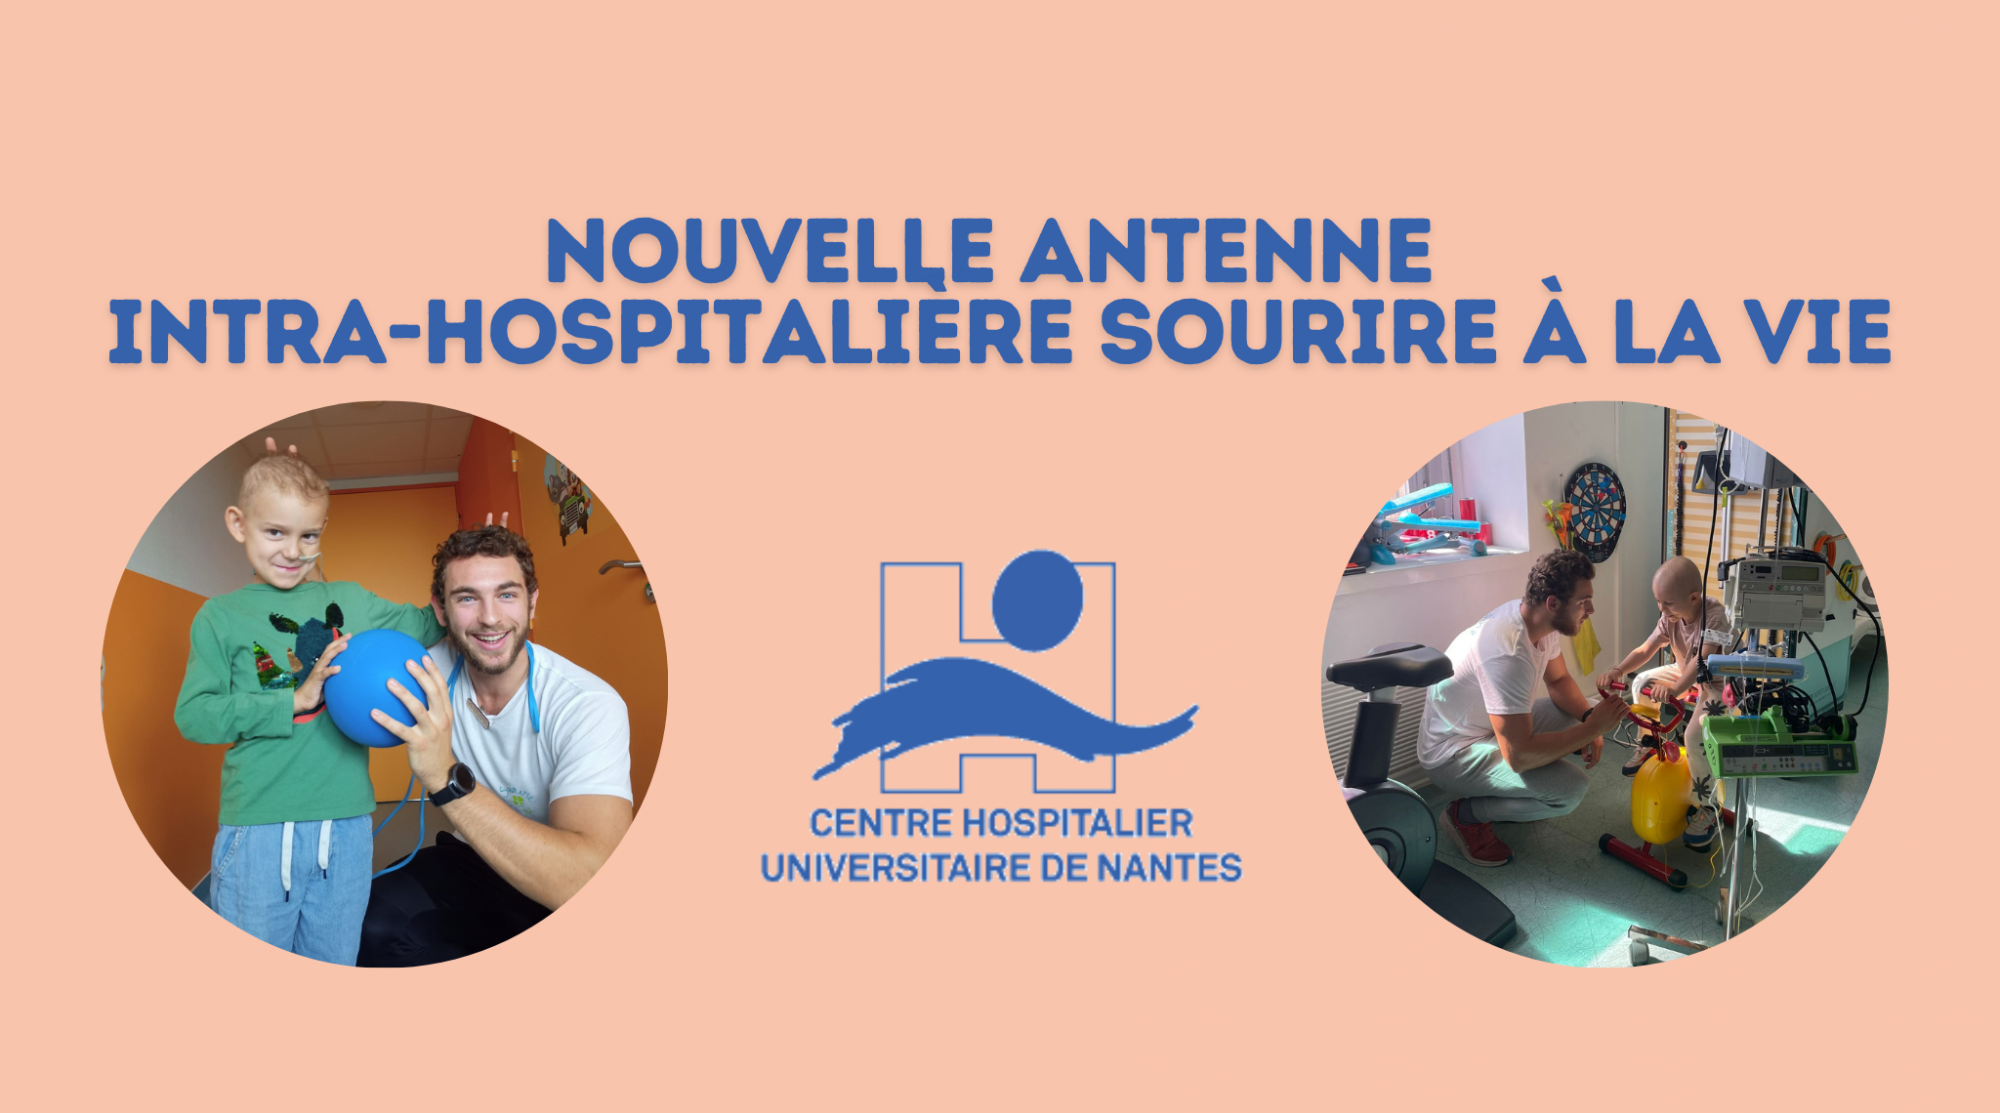 Sourire à la Vie étend son engagement : Ouverture d'une nouvelle antenne intra-hospitalière au CHU de Nantes